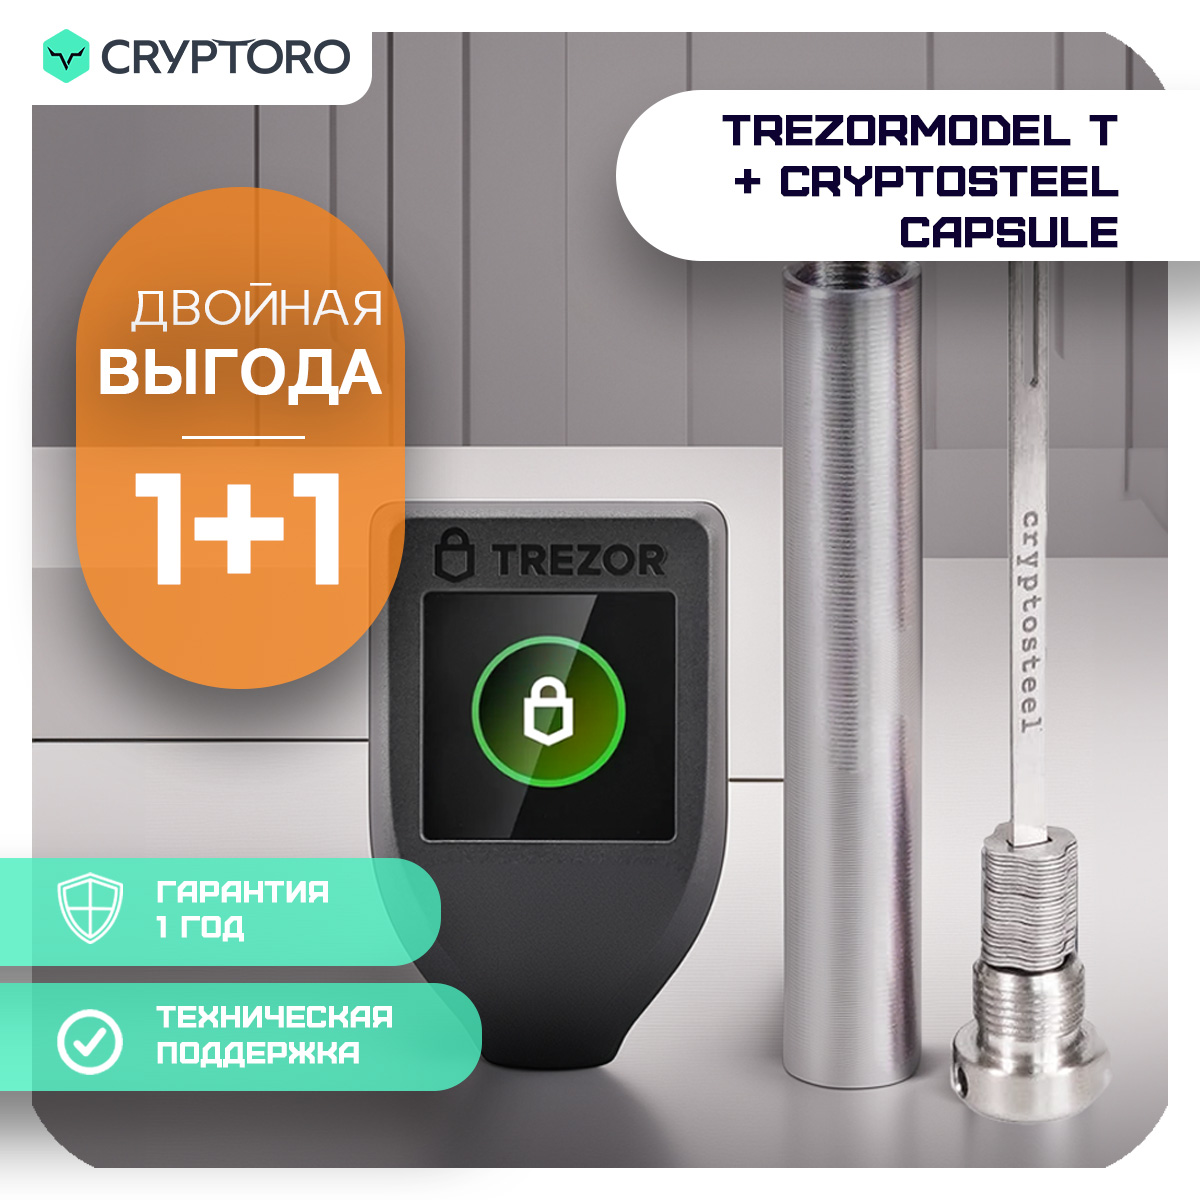 Набор Trezor Model T + Cryptosteel Capsule из аппаратного кошелька и устройства seed